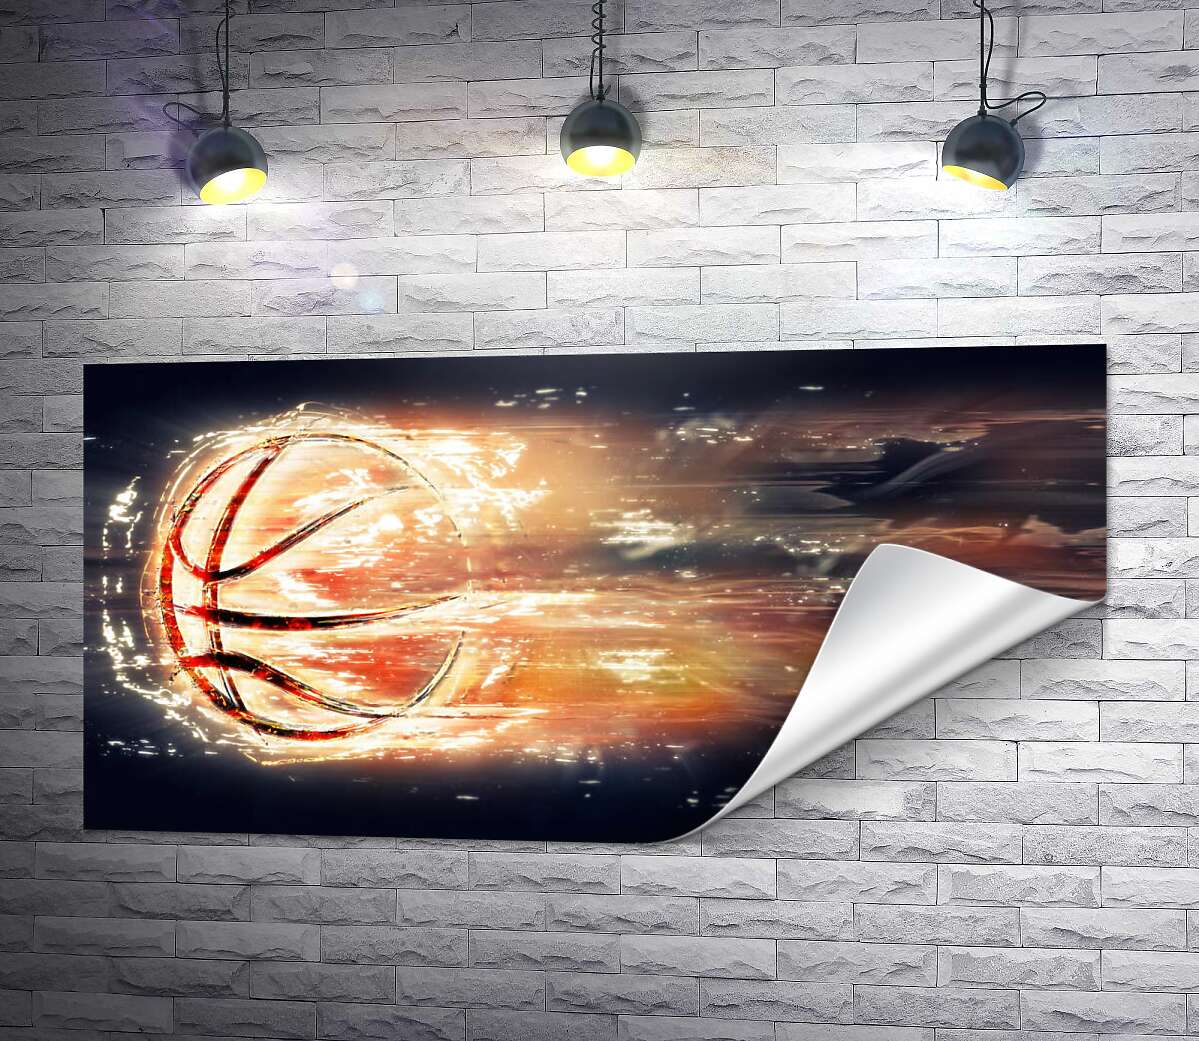 друк Контур баскетбольного м'яча у вигляді вогняної кулі